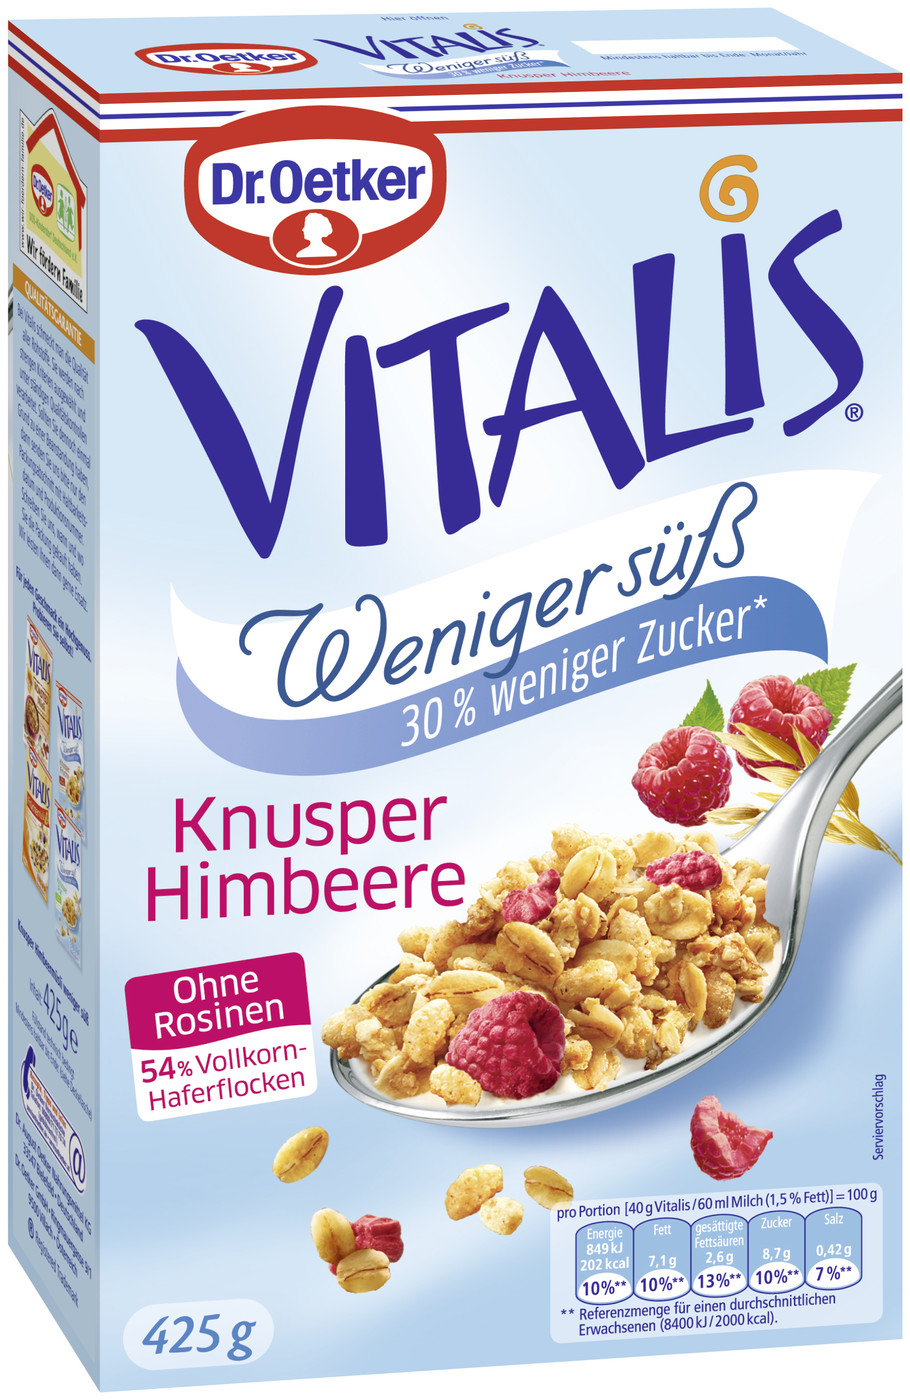 Dr.Oetker Vitalis Knusper Himbeer weniger süß 425G